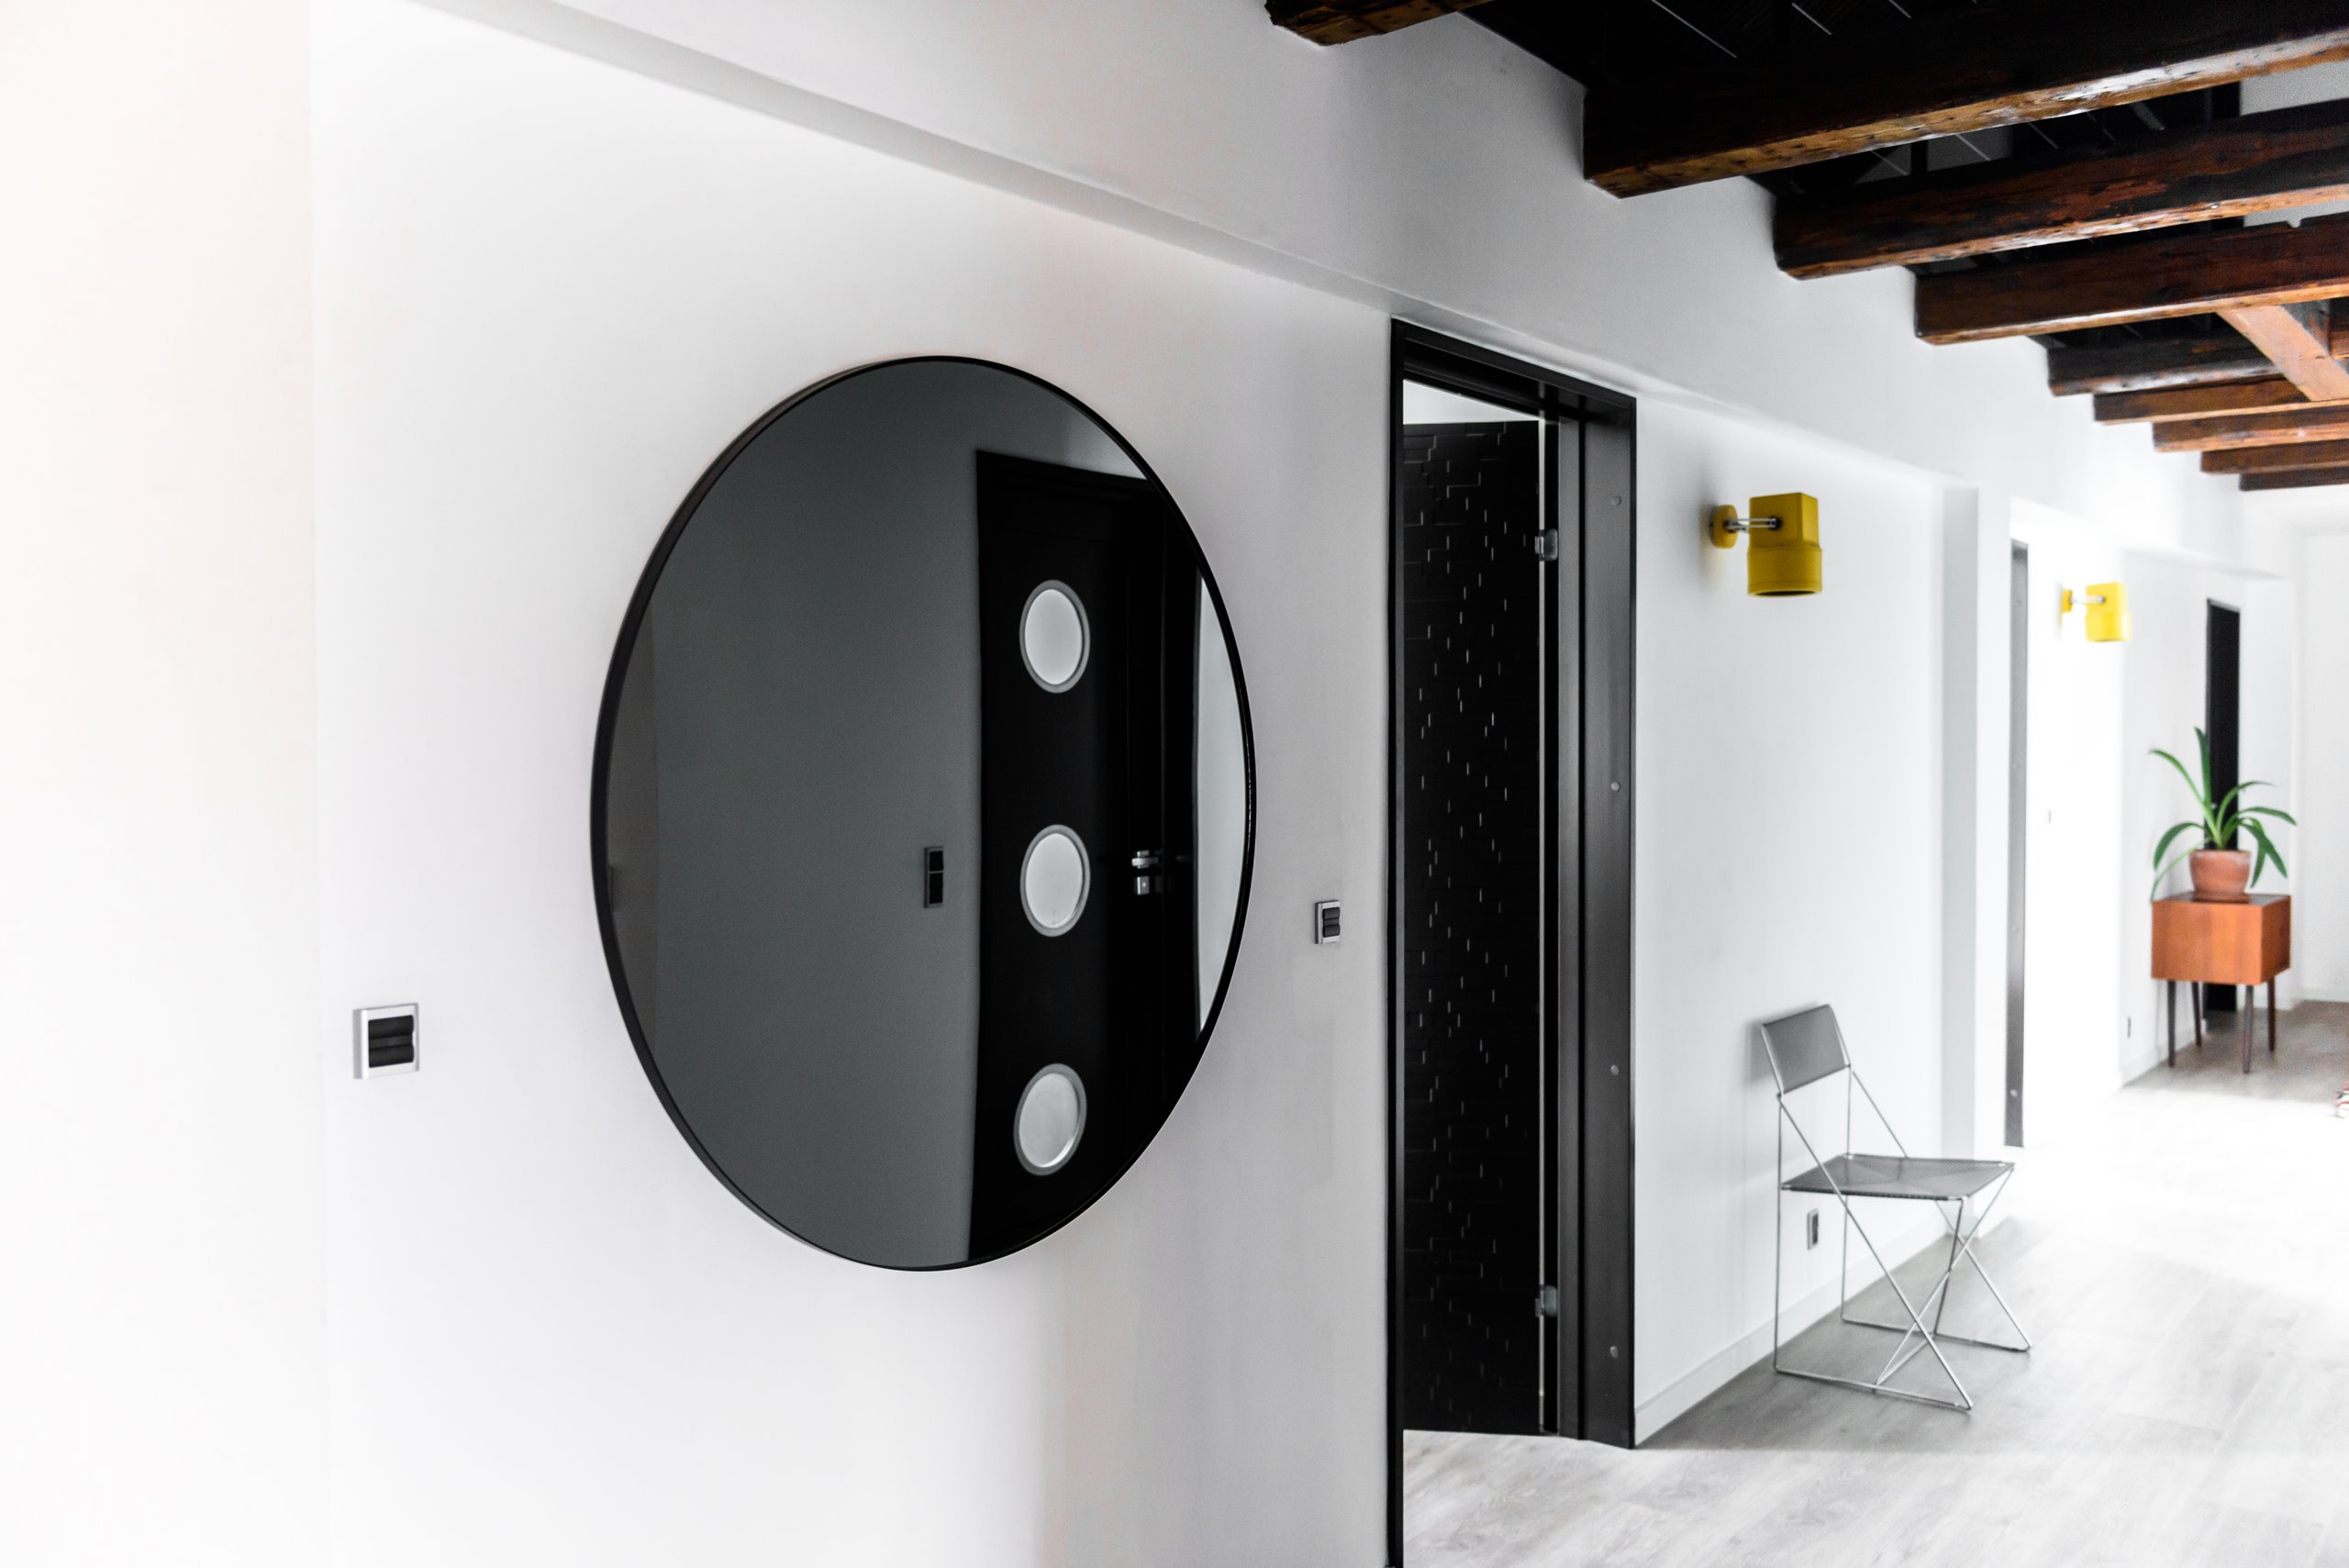 Sådan kan du bruge dine døre som dekorative indslag i indretningen